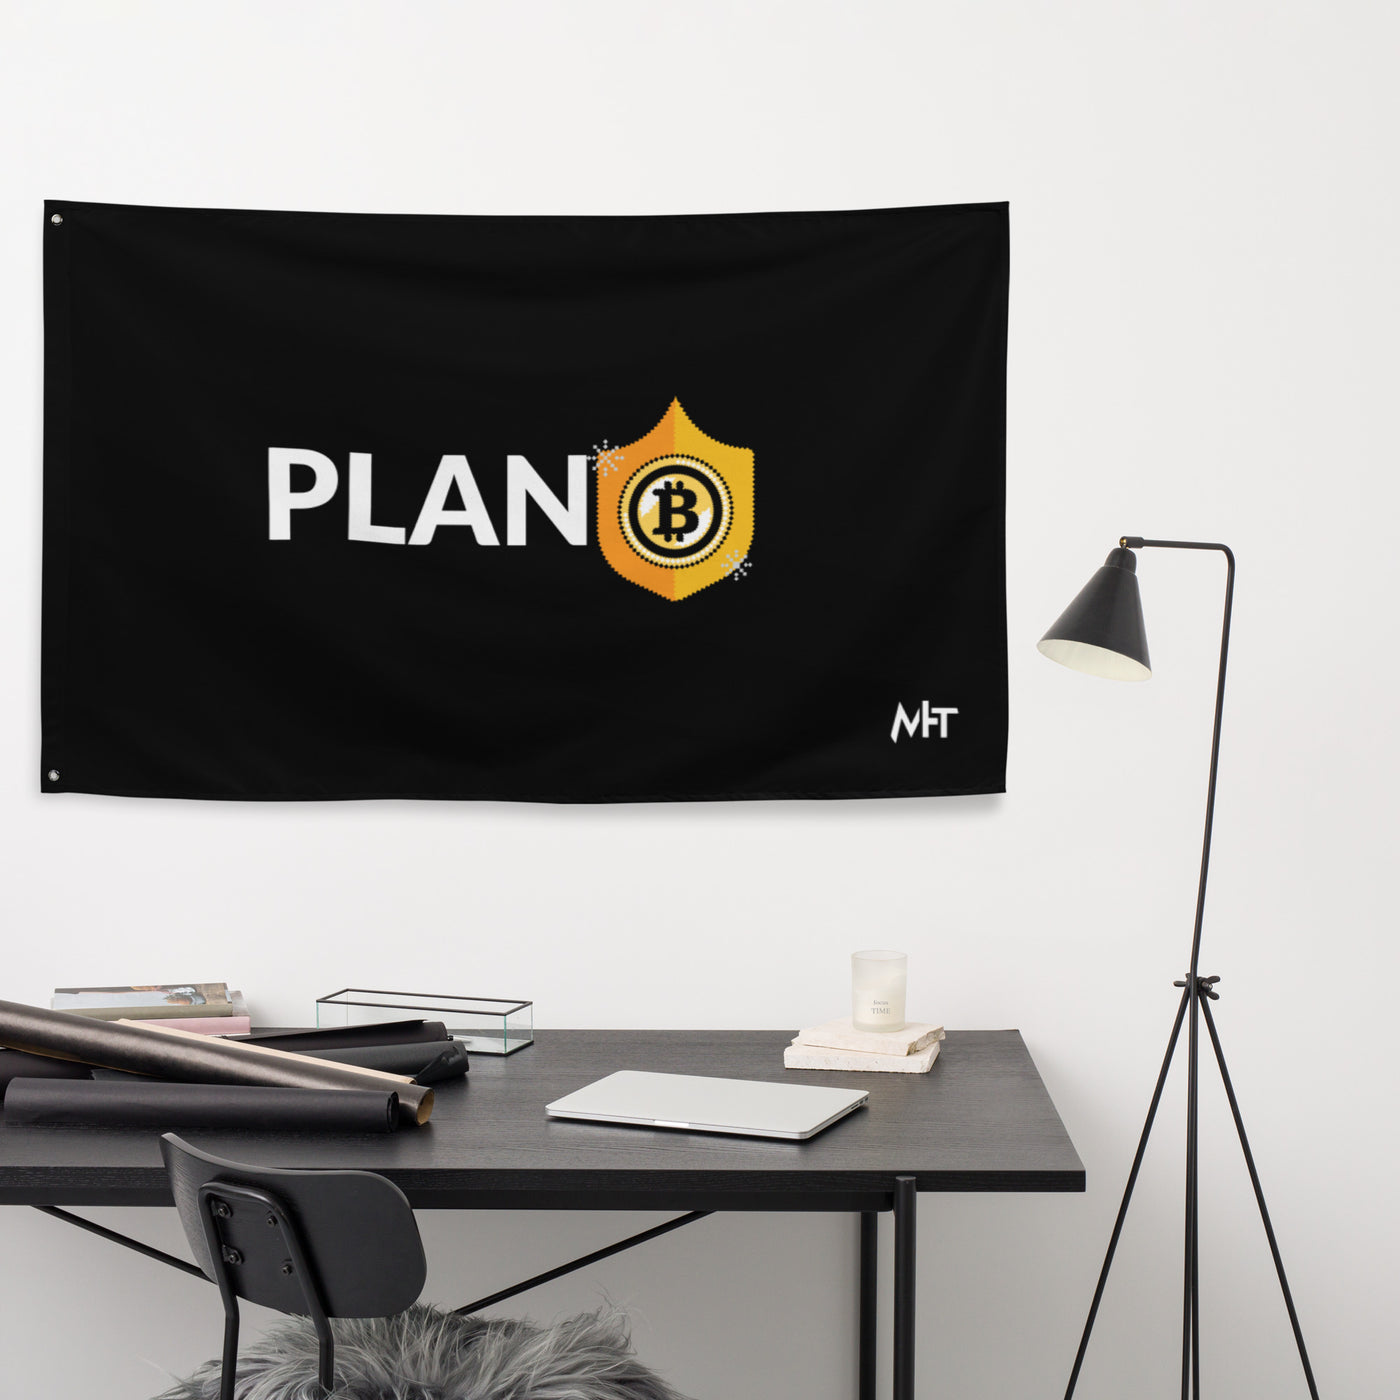 Plan B v2 - Flag